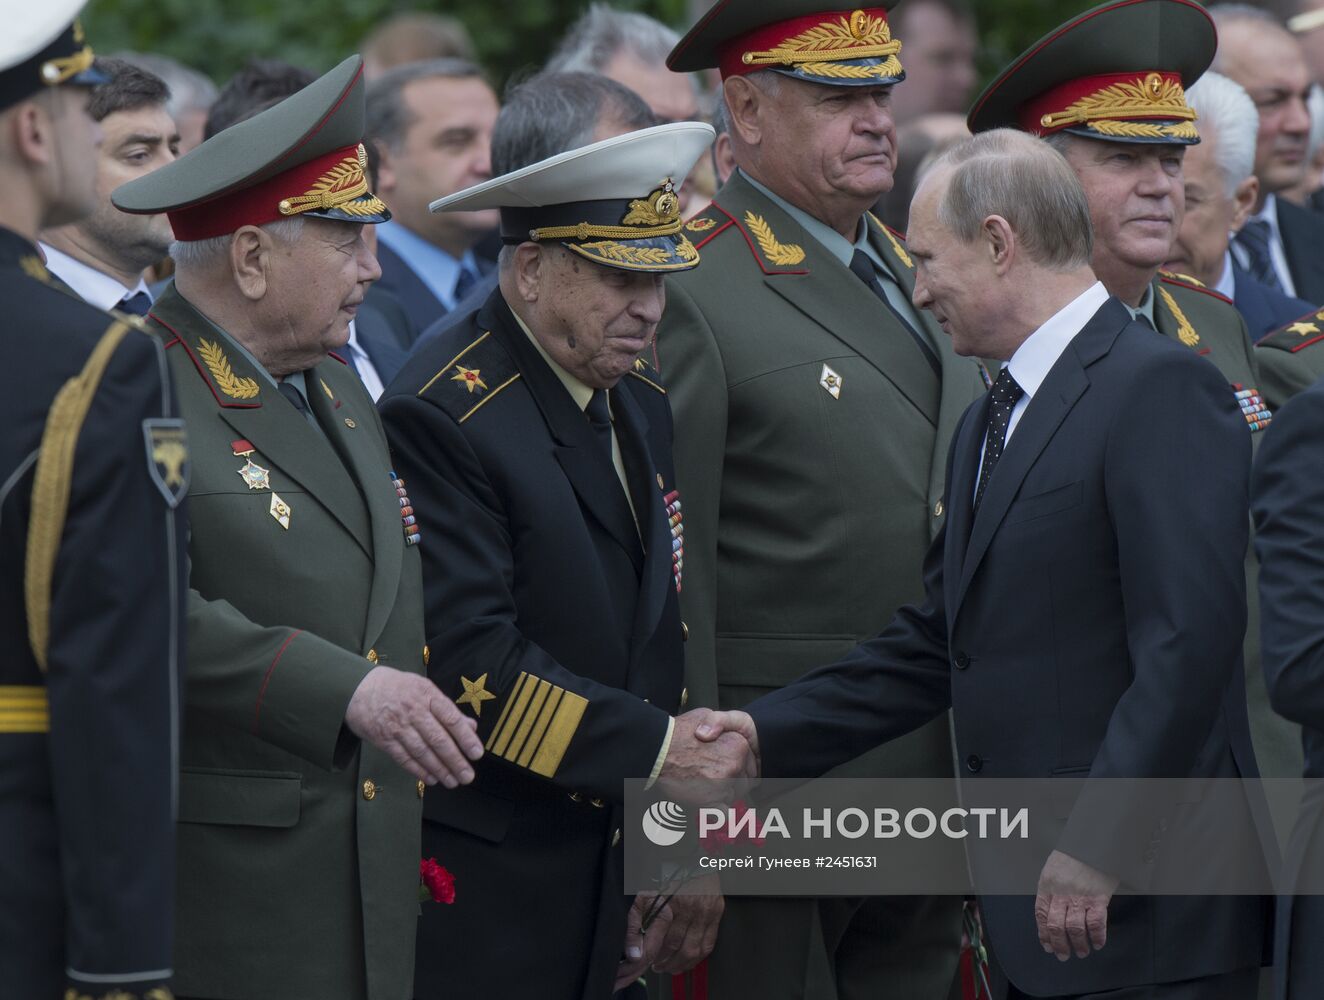 В.Путин и Д.Медведев возложили цветы к могиле неизвестного солдата у Кремлевской стены